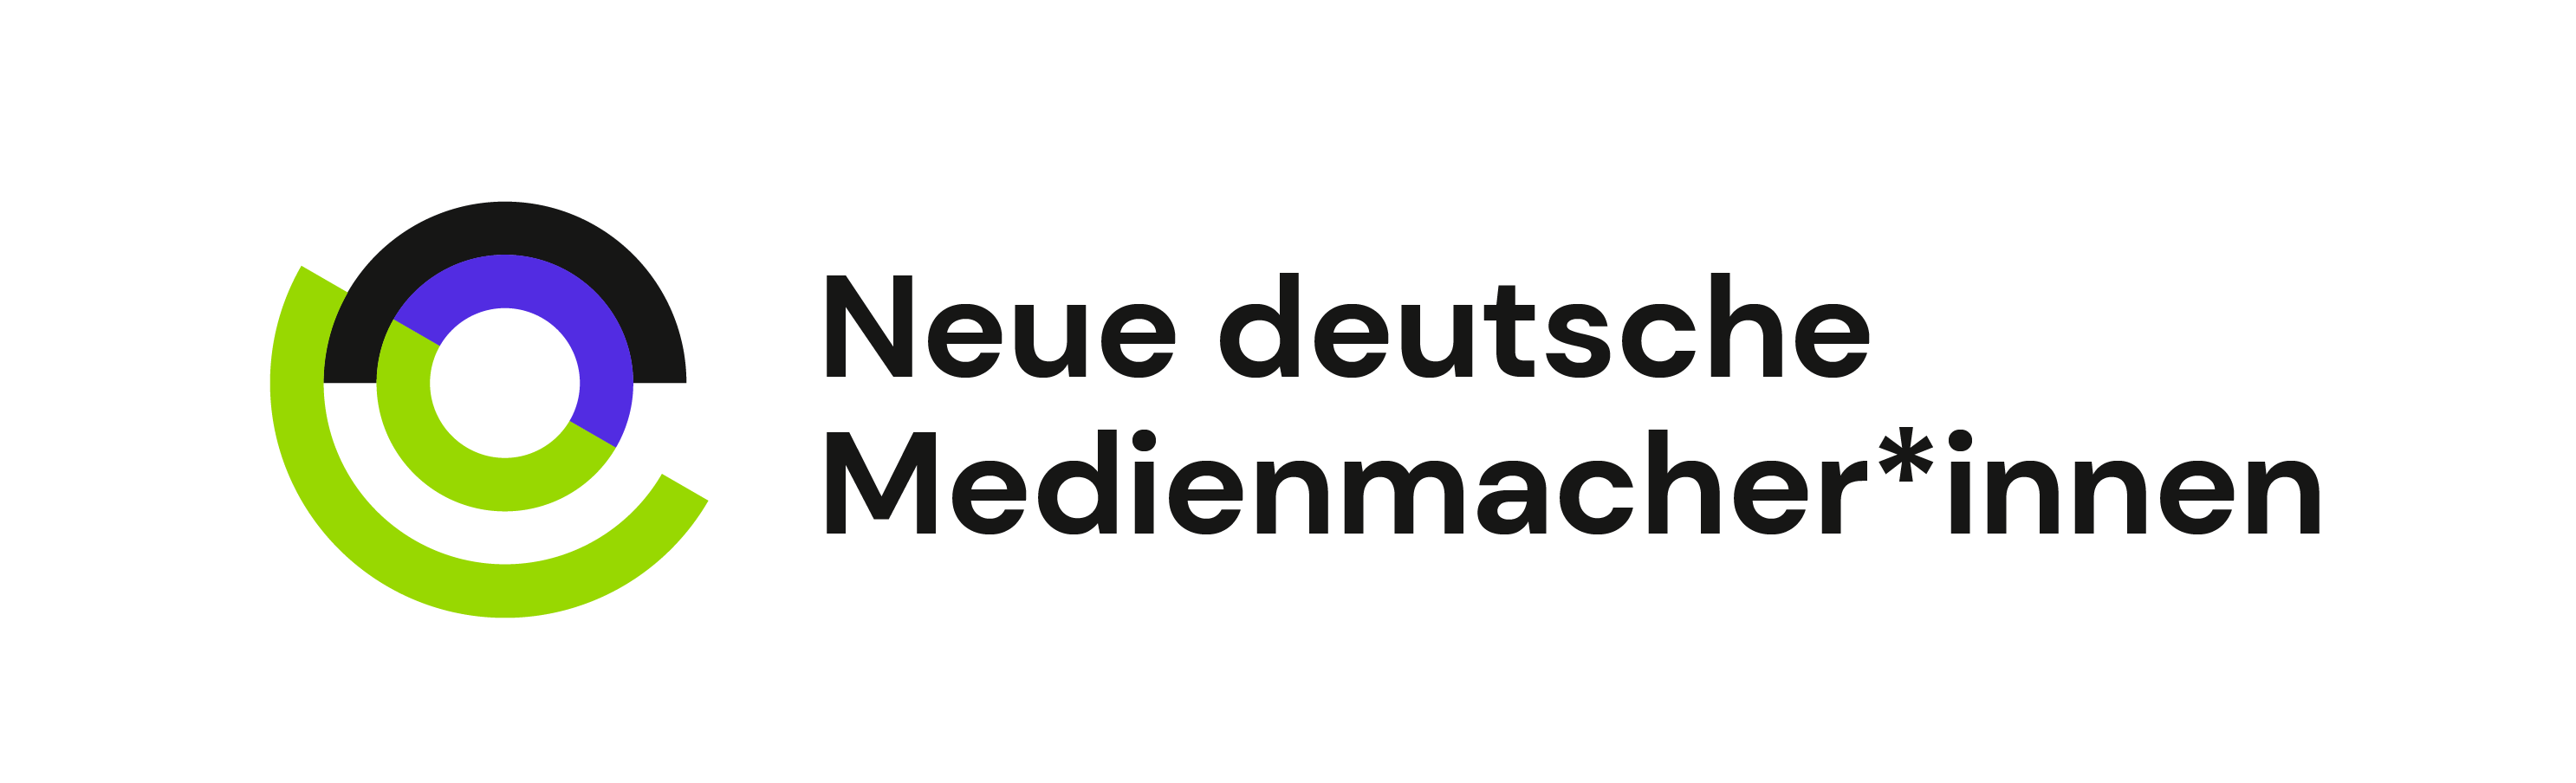 Neue deutsche Medienmacher*innen logo